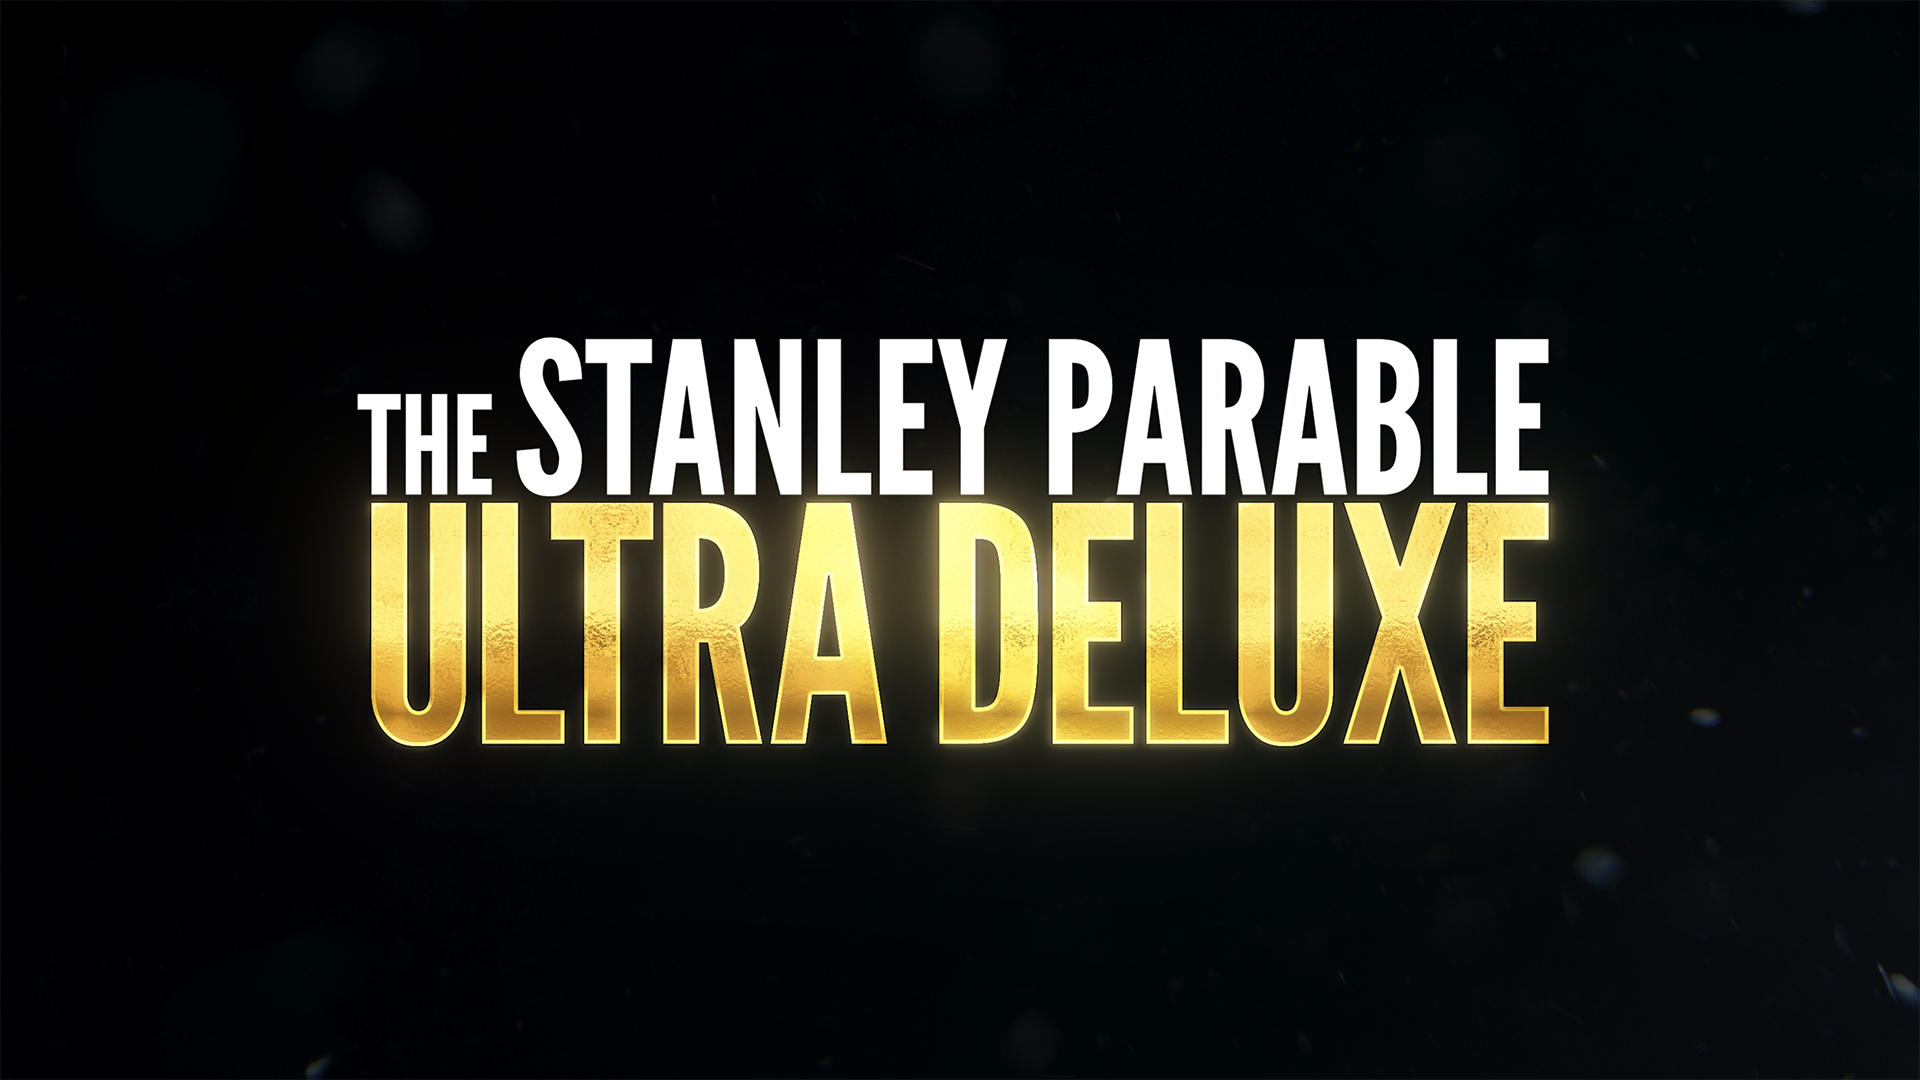 Stanley parable ultra. The Stanley Parable: Ultra Deluxe. The Stanley Parable Ultra Deluxe ps4. The Stanley Parable: Ultra Deluxe ps4 диск. Stanley Parable Ultra Deluxe Nintendo Switch.